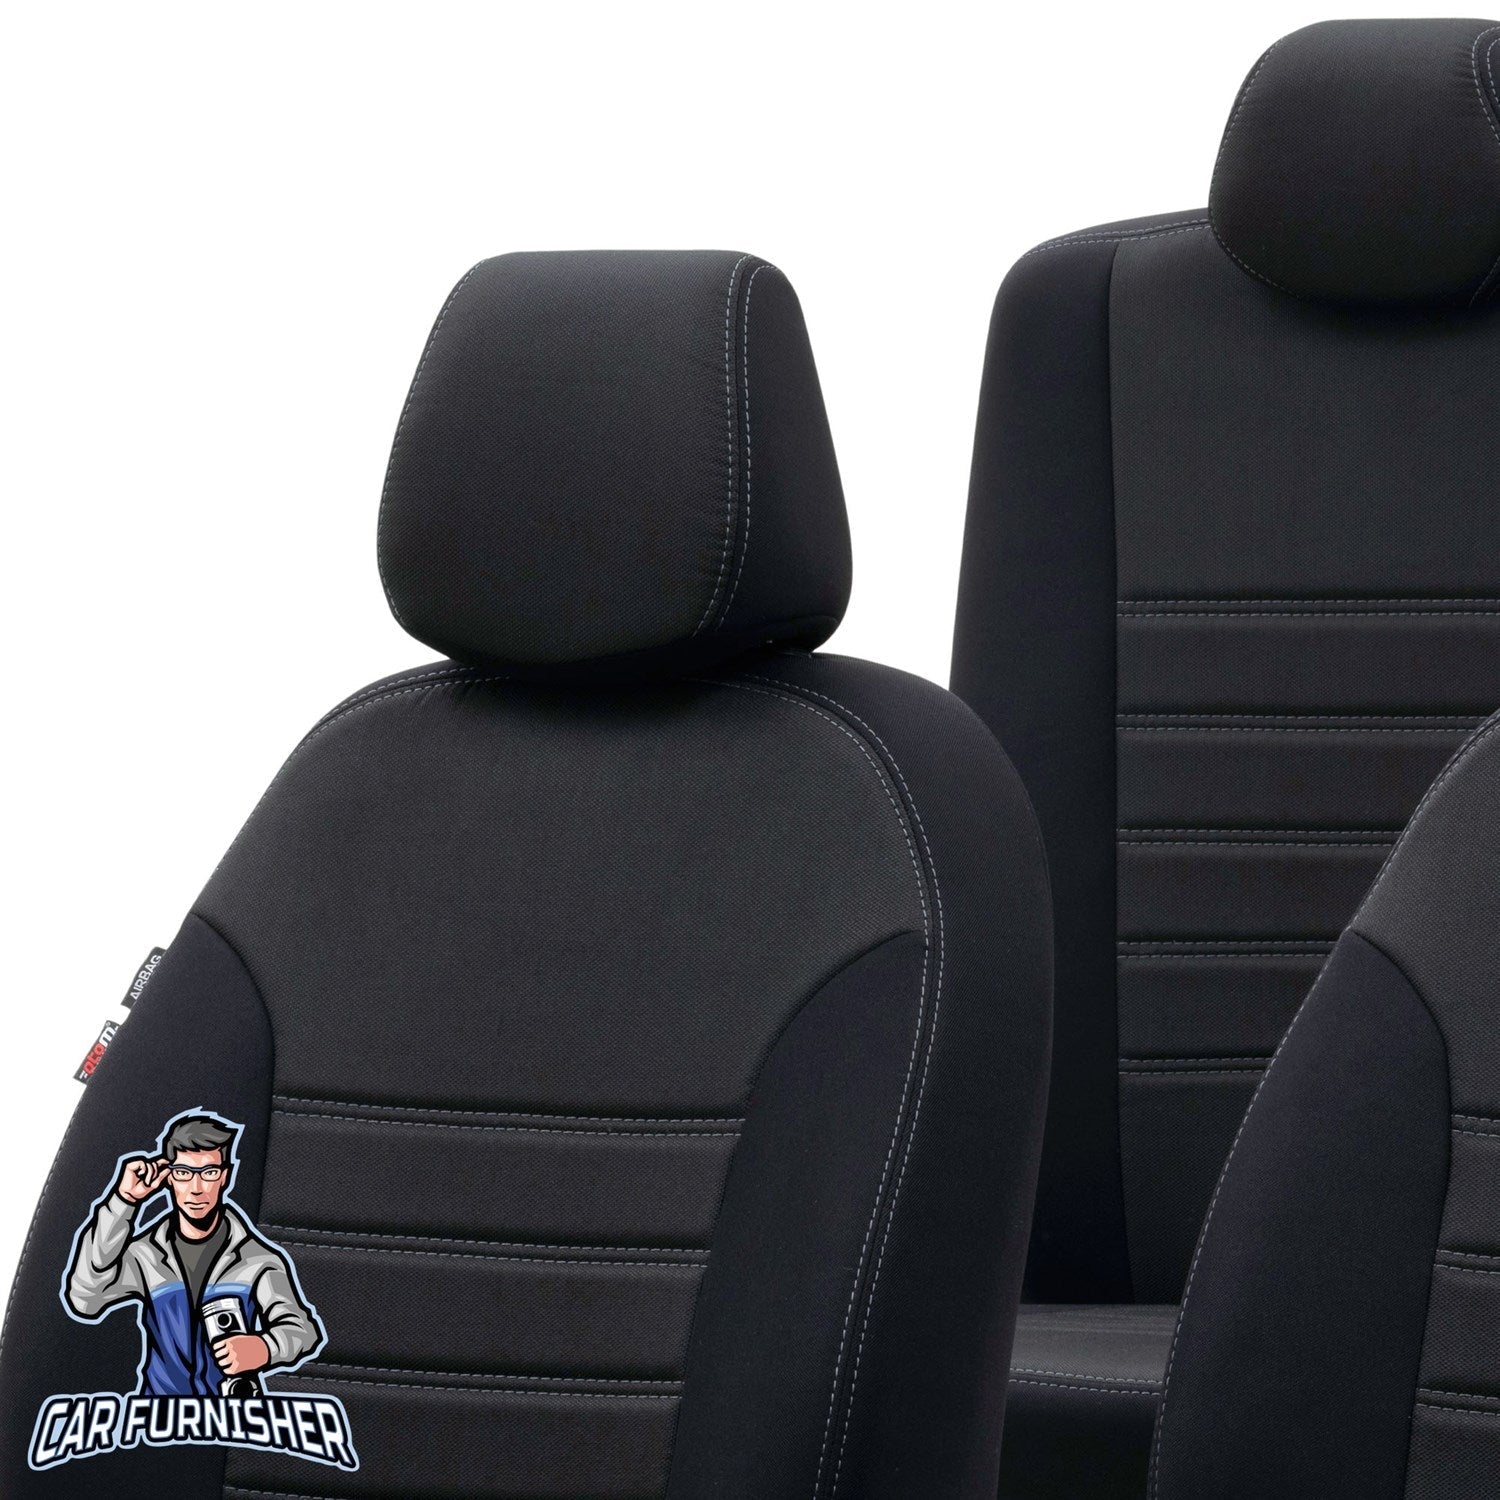 Toyota Camry Seat Cover Original Jacquard Design Black Jacquard Fabric